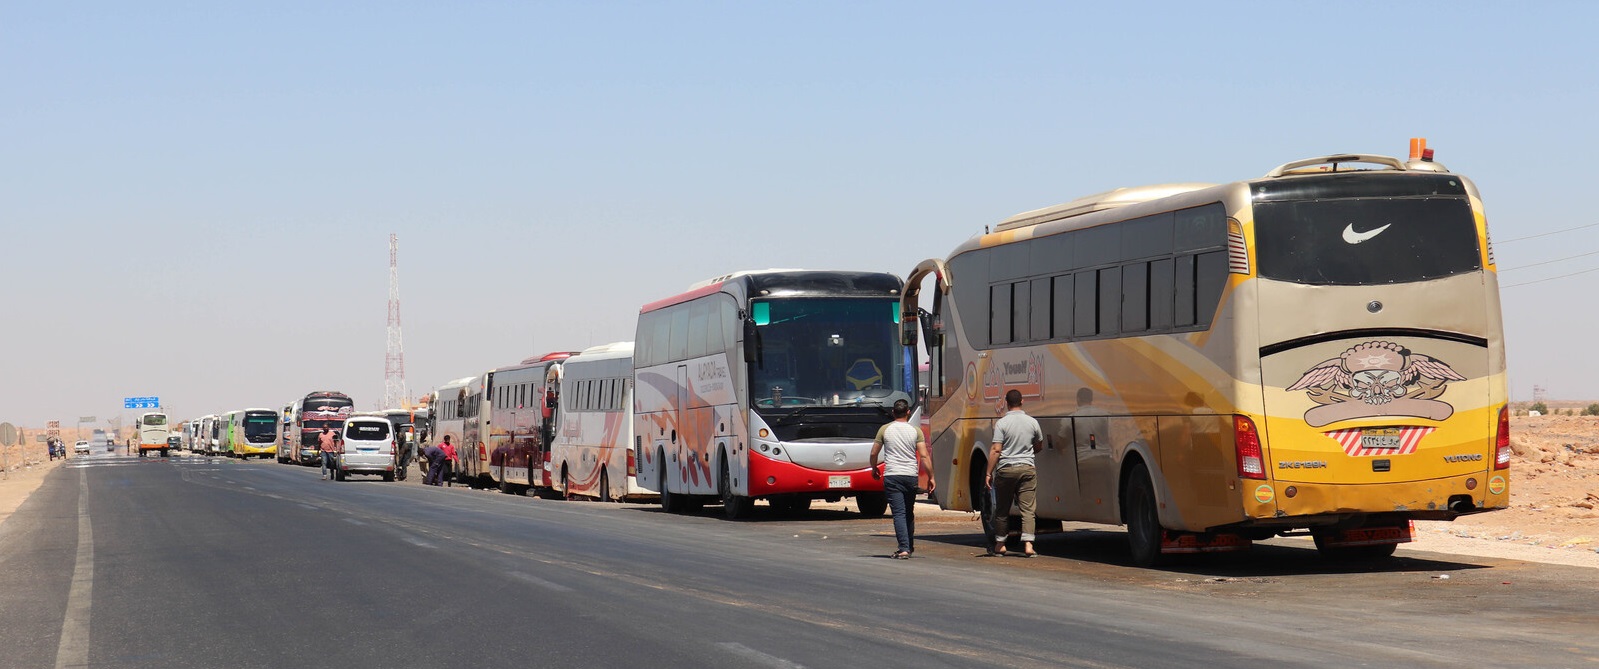 refugee-buses